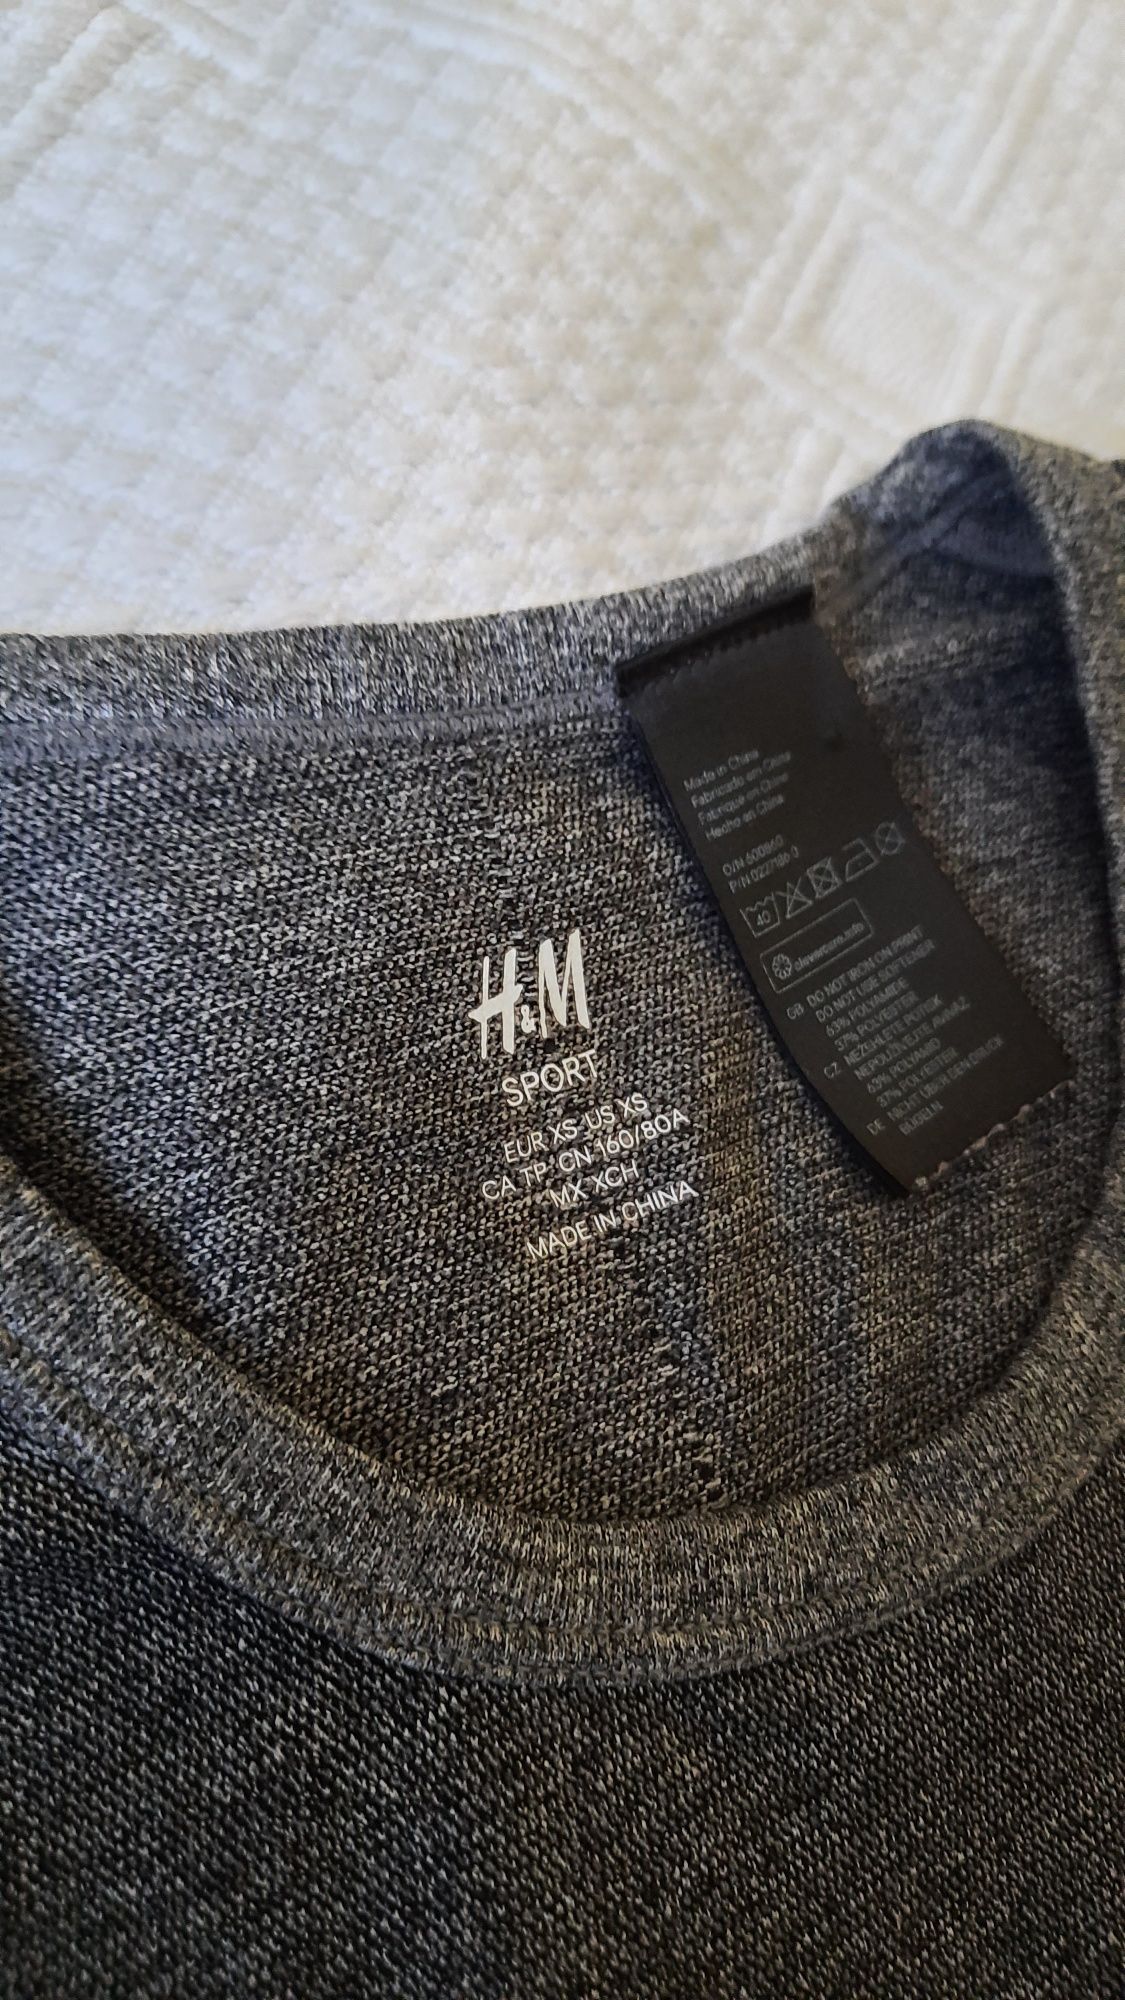 T-shirt sportowy, koszulka, bluzka funkcyjna H&M sport r. XS